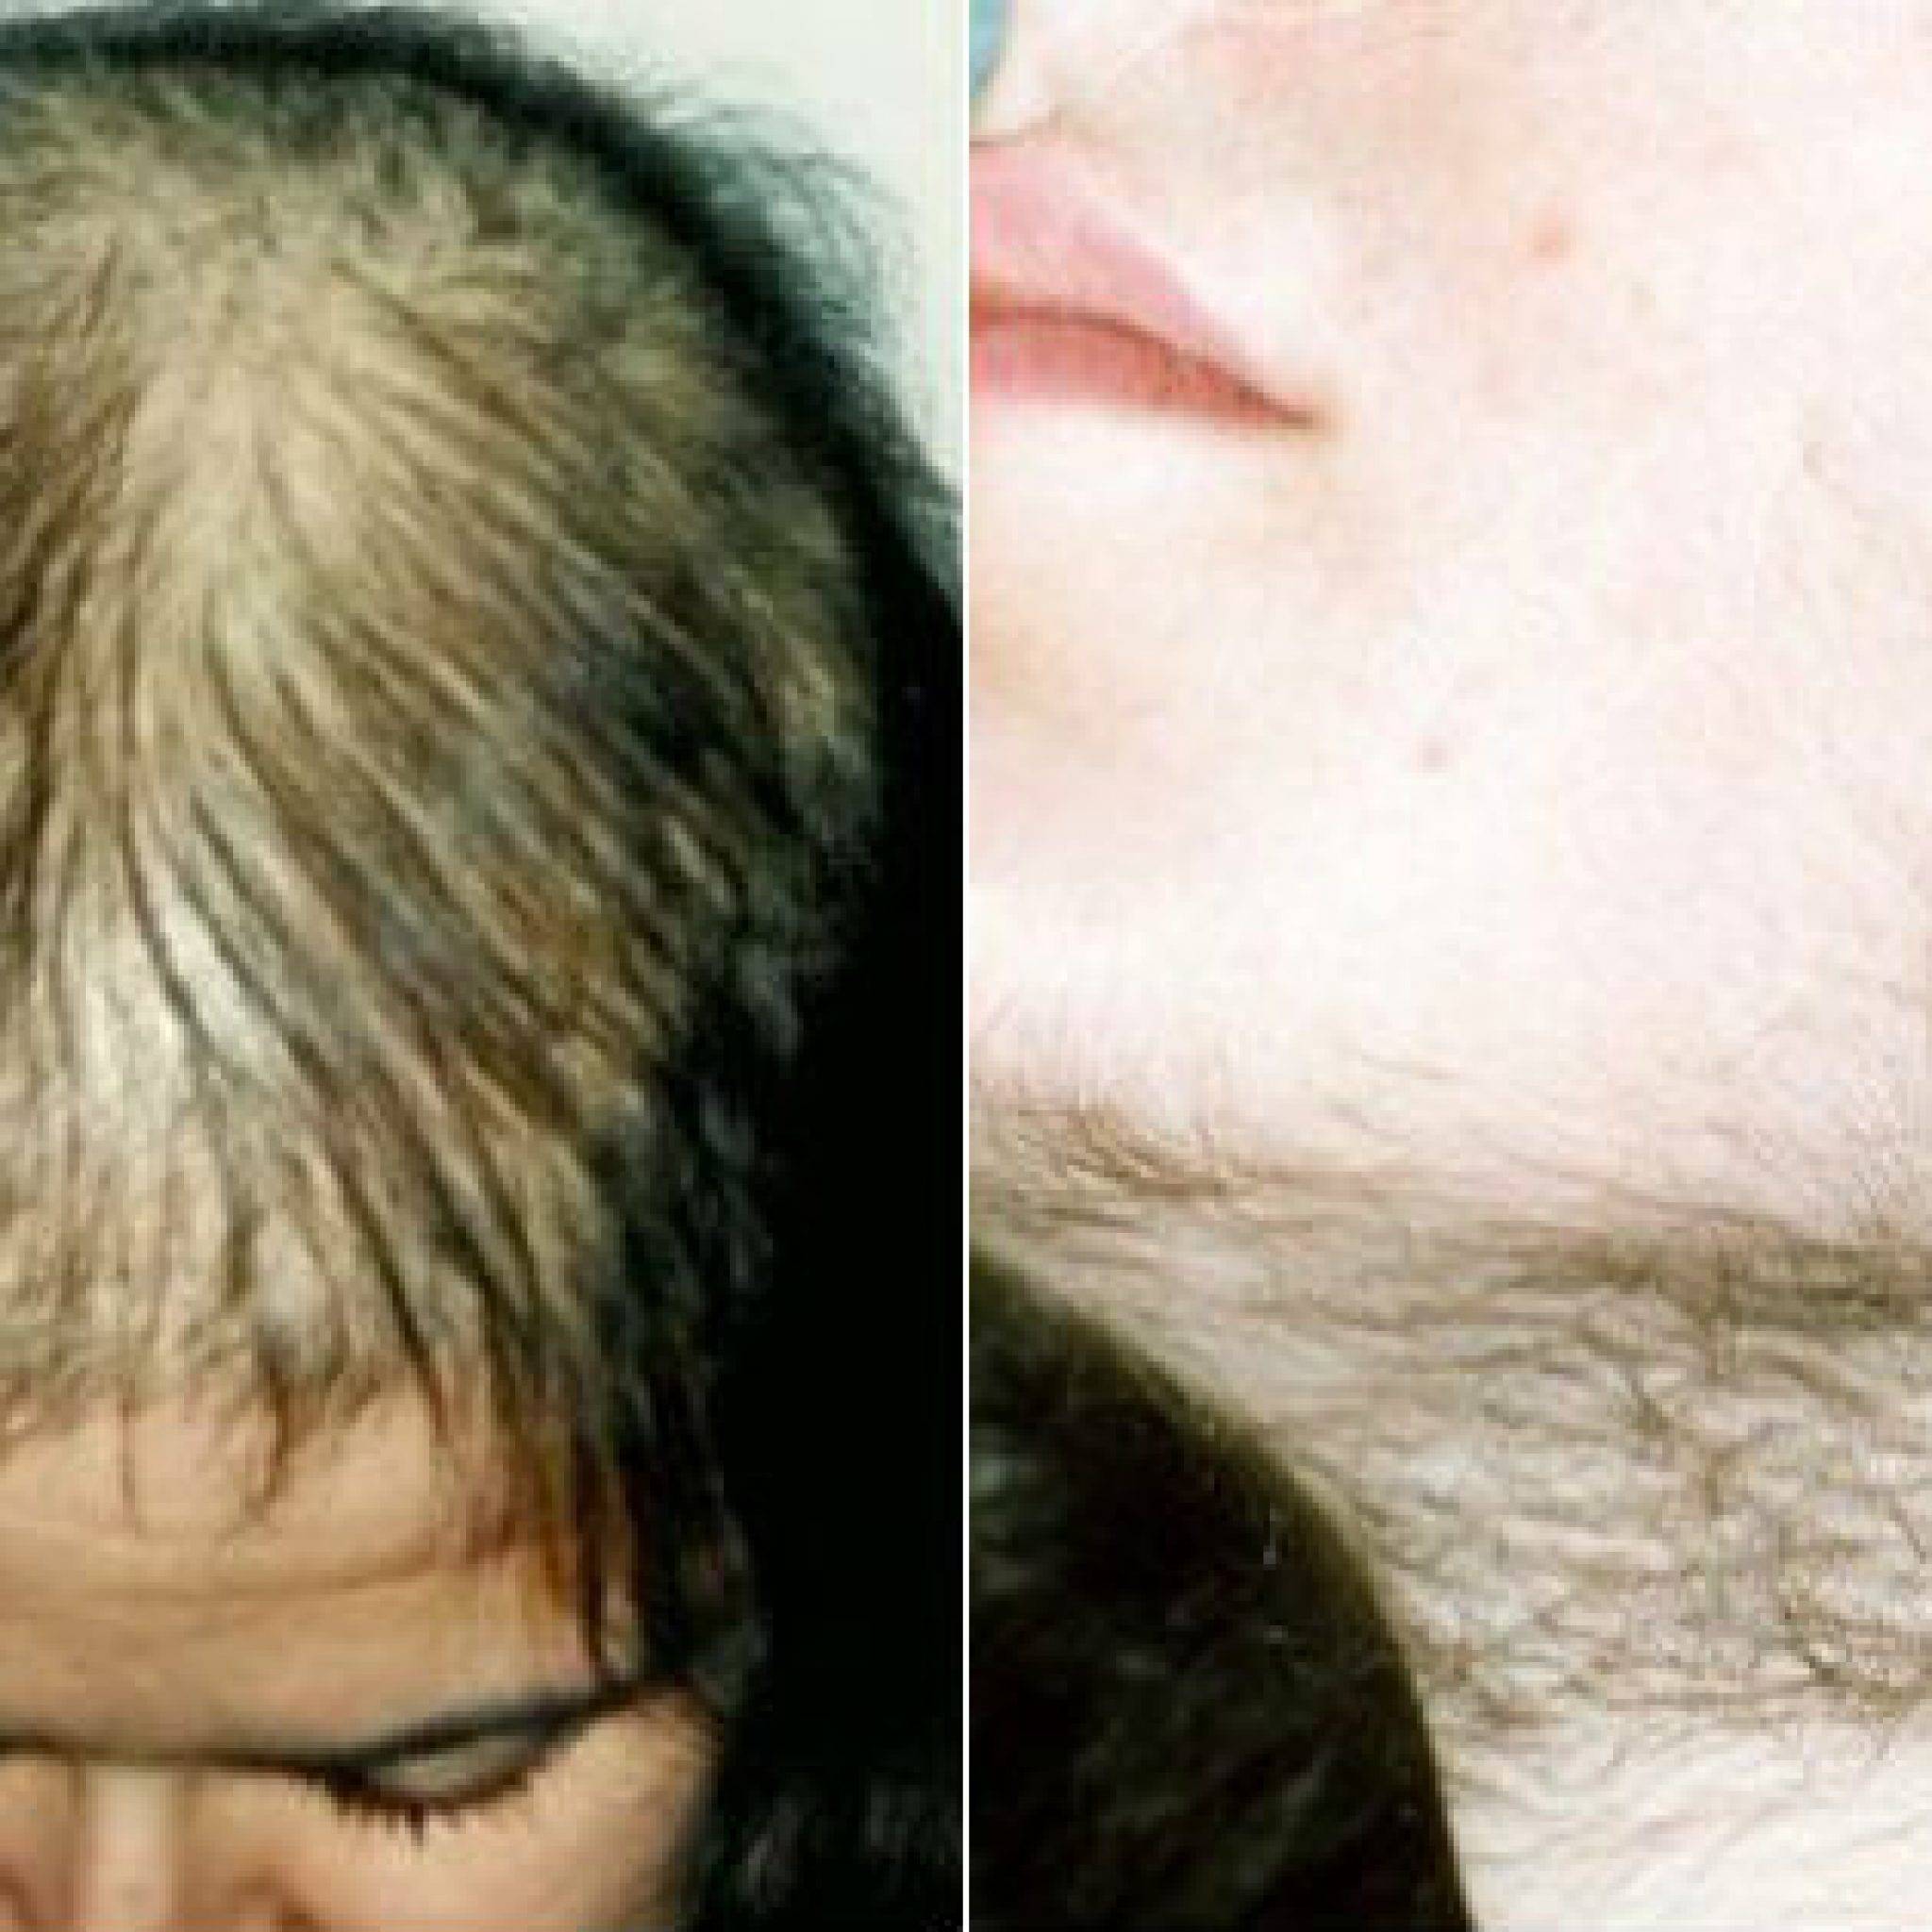 Могут ли выпадать волосы от переизбытка кальция